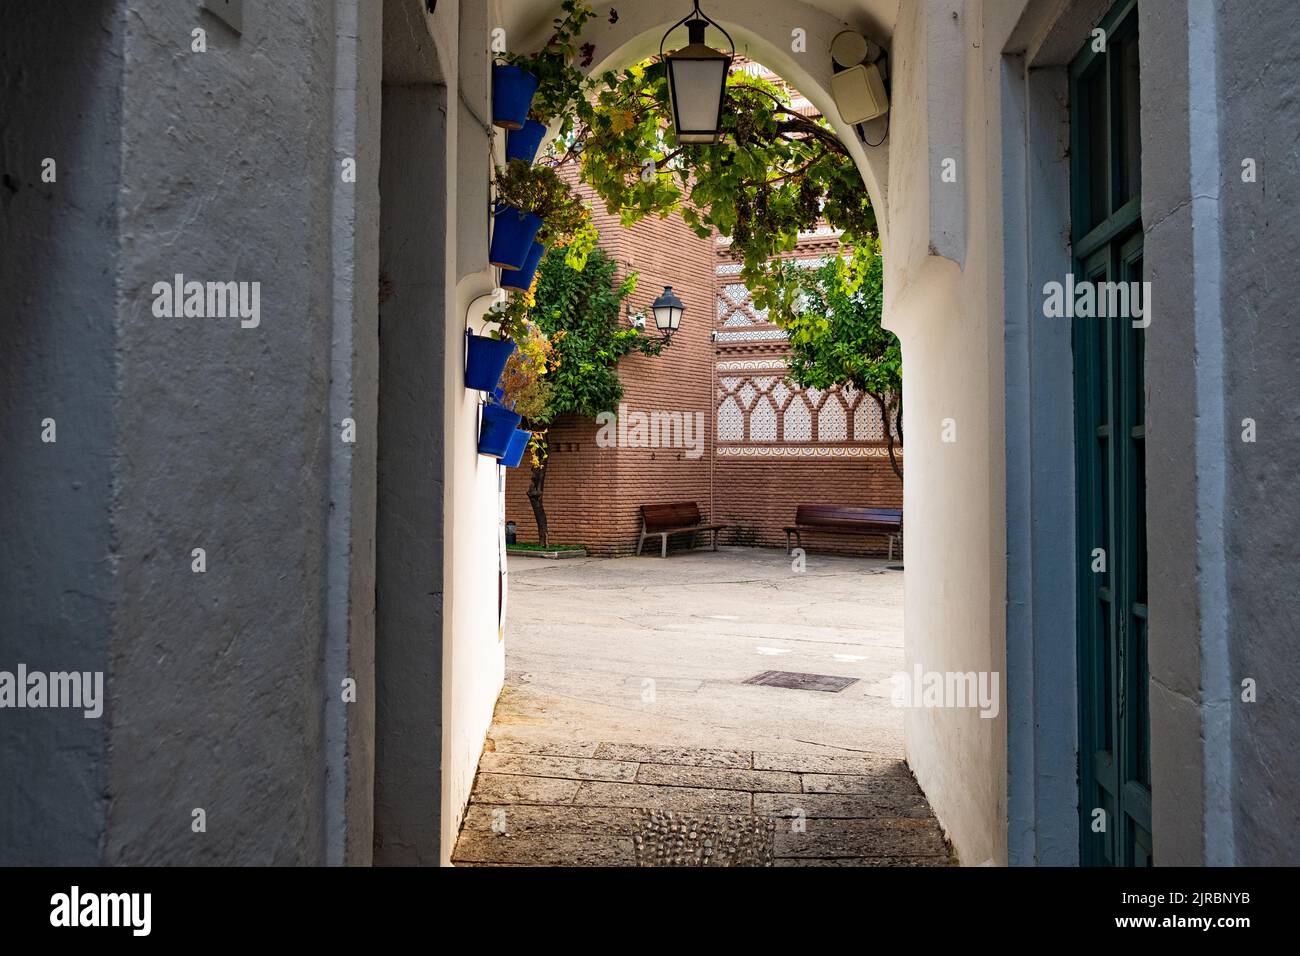 Traditionelle kleine Gasse im spanisch-andalusischen Stil mit blauen Töpfen und malerischem Tageslicht. Klassische spanische Kleinstadt mit weißen Wänden Stockfoto